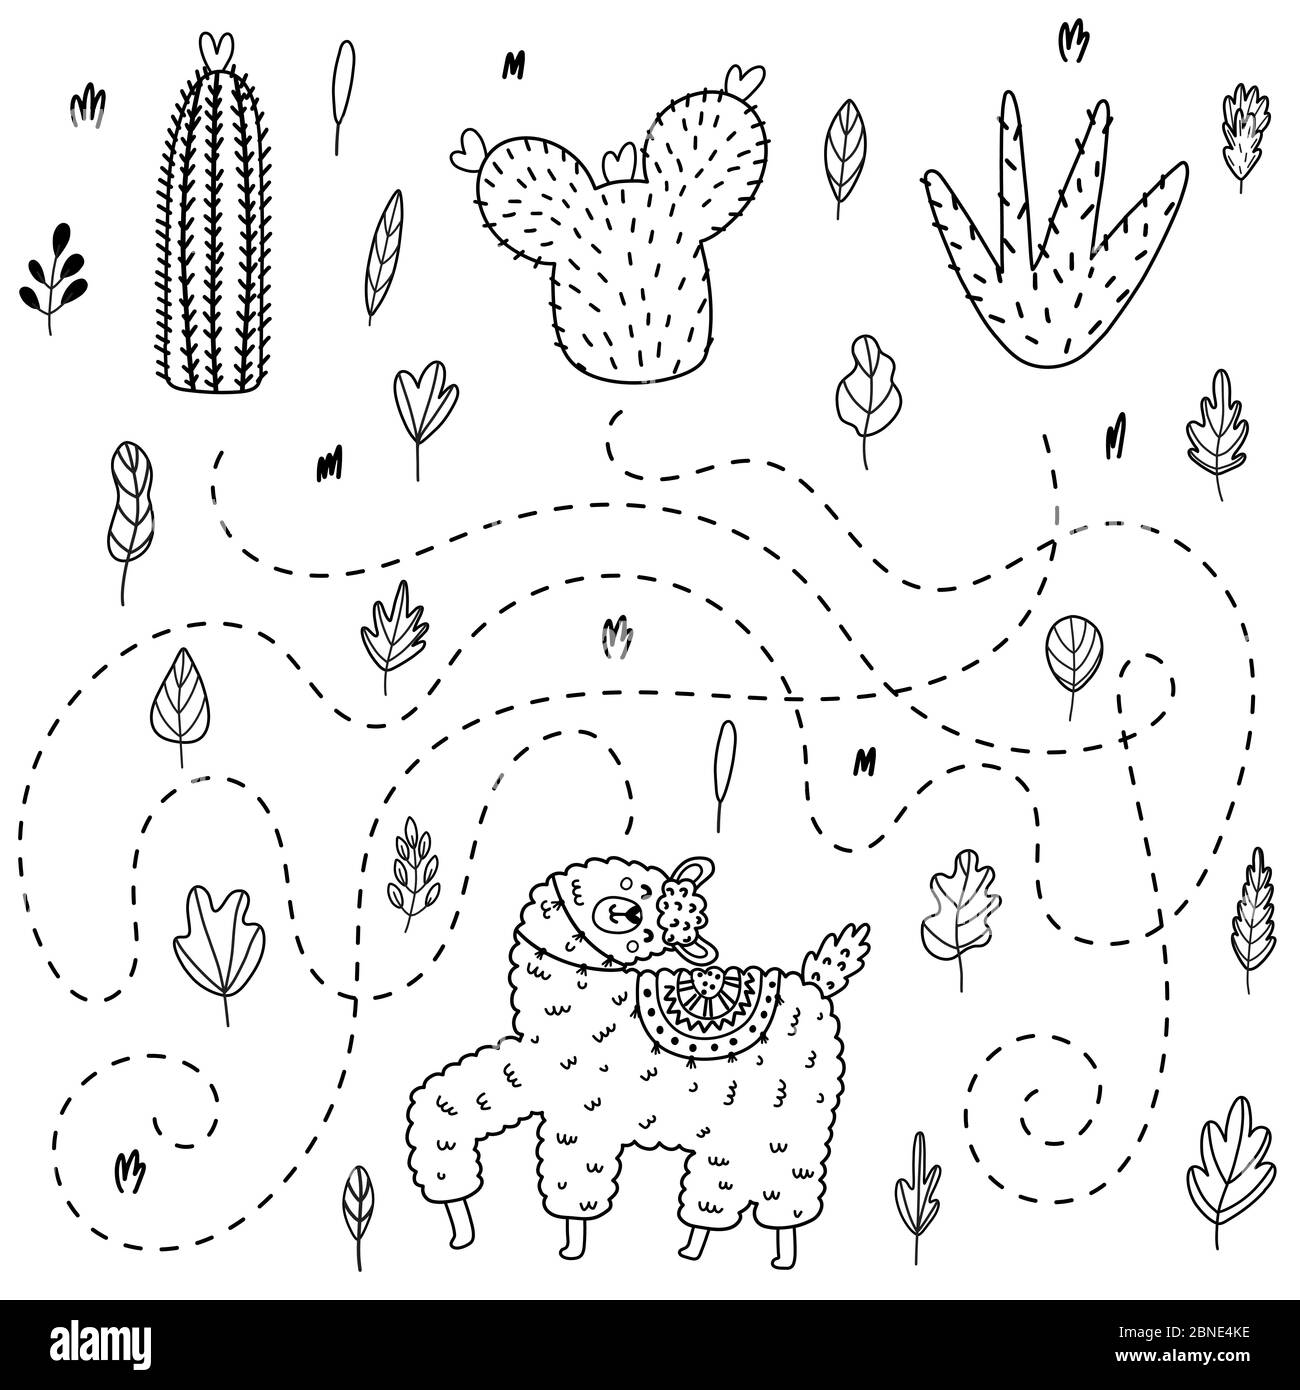 Finde heraus, welcher Kaktus das Lama bekommt. Outline Labyrinth-Spiel Stock Vektor